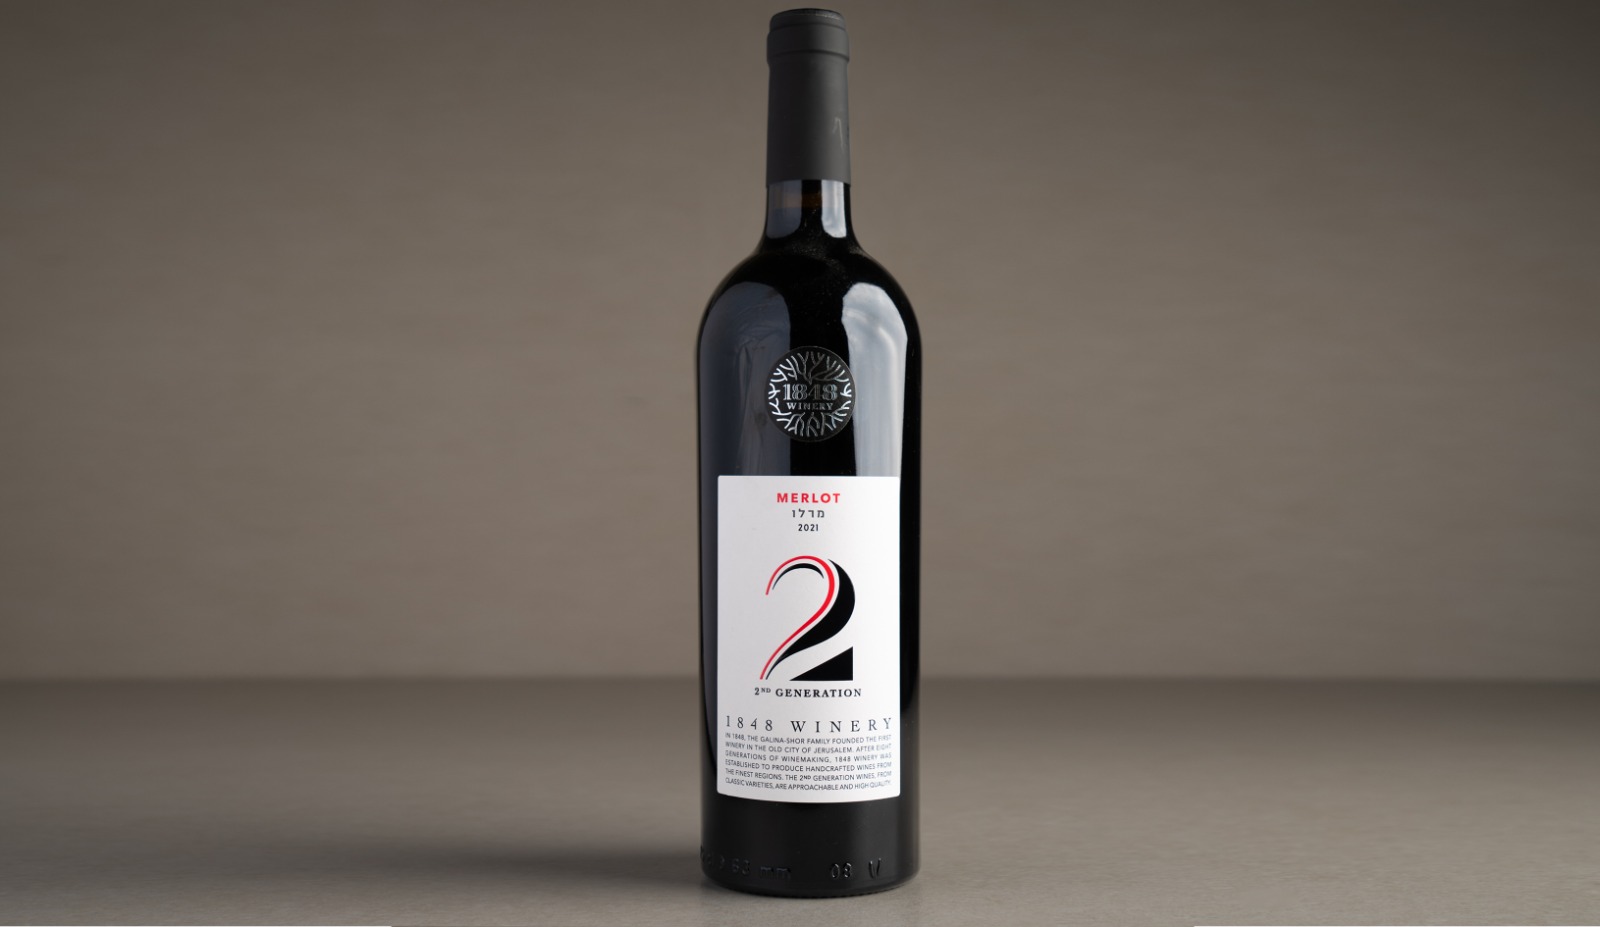 יין אדום יבש "1848" דור 2 מרלו 2021